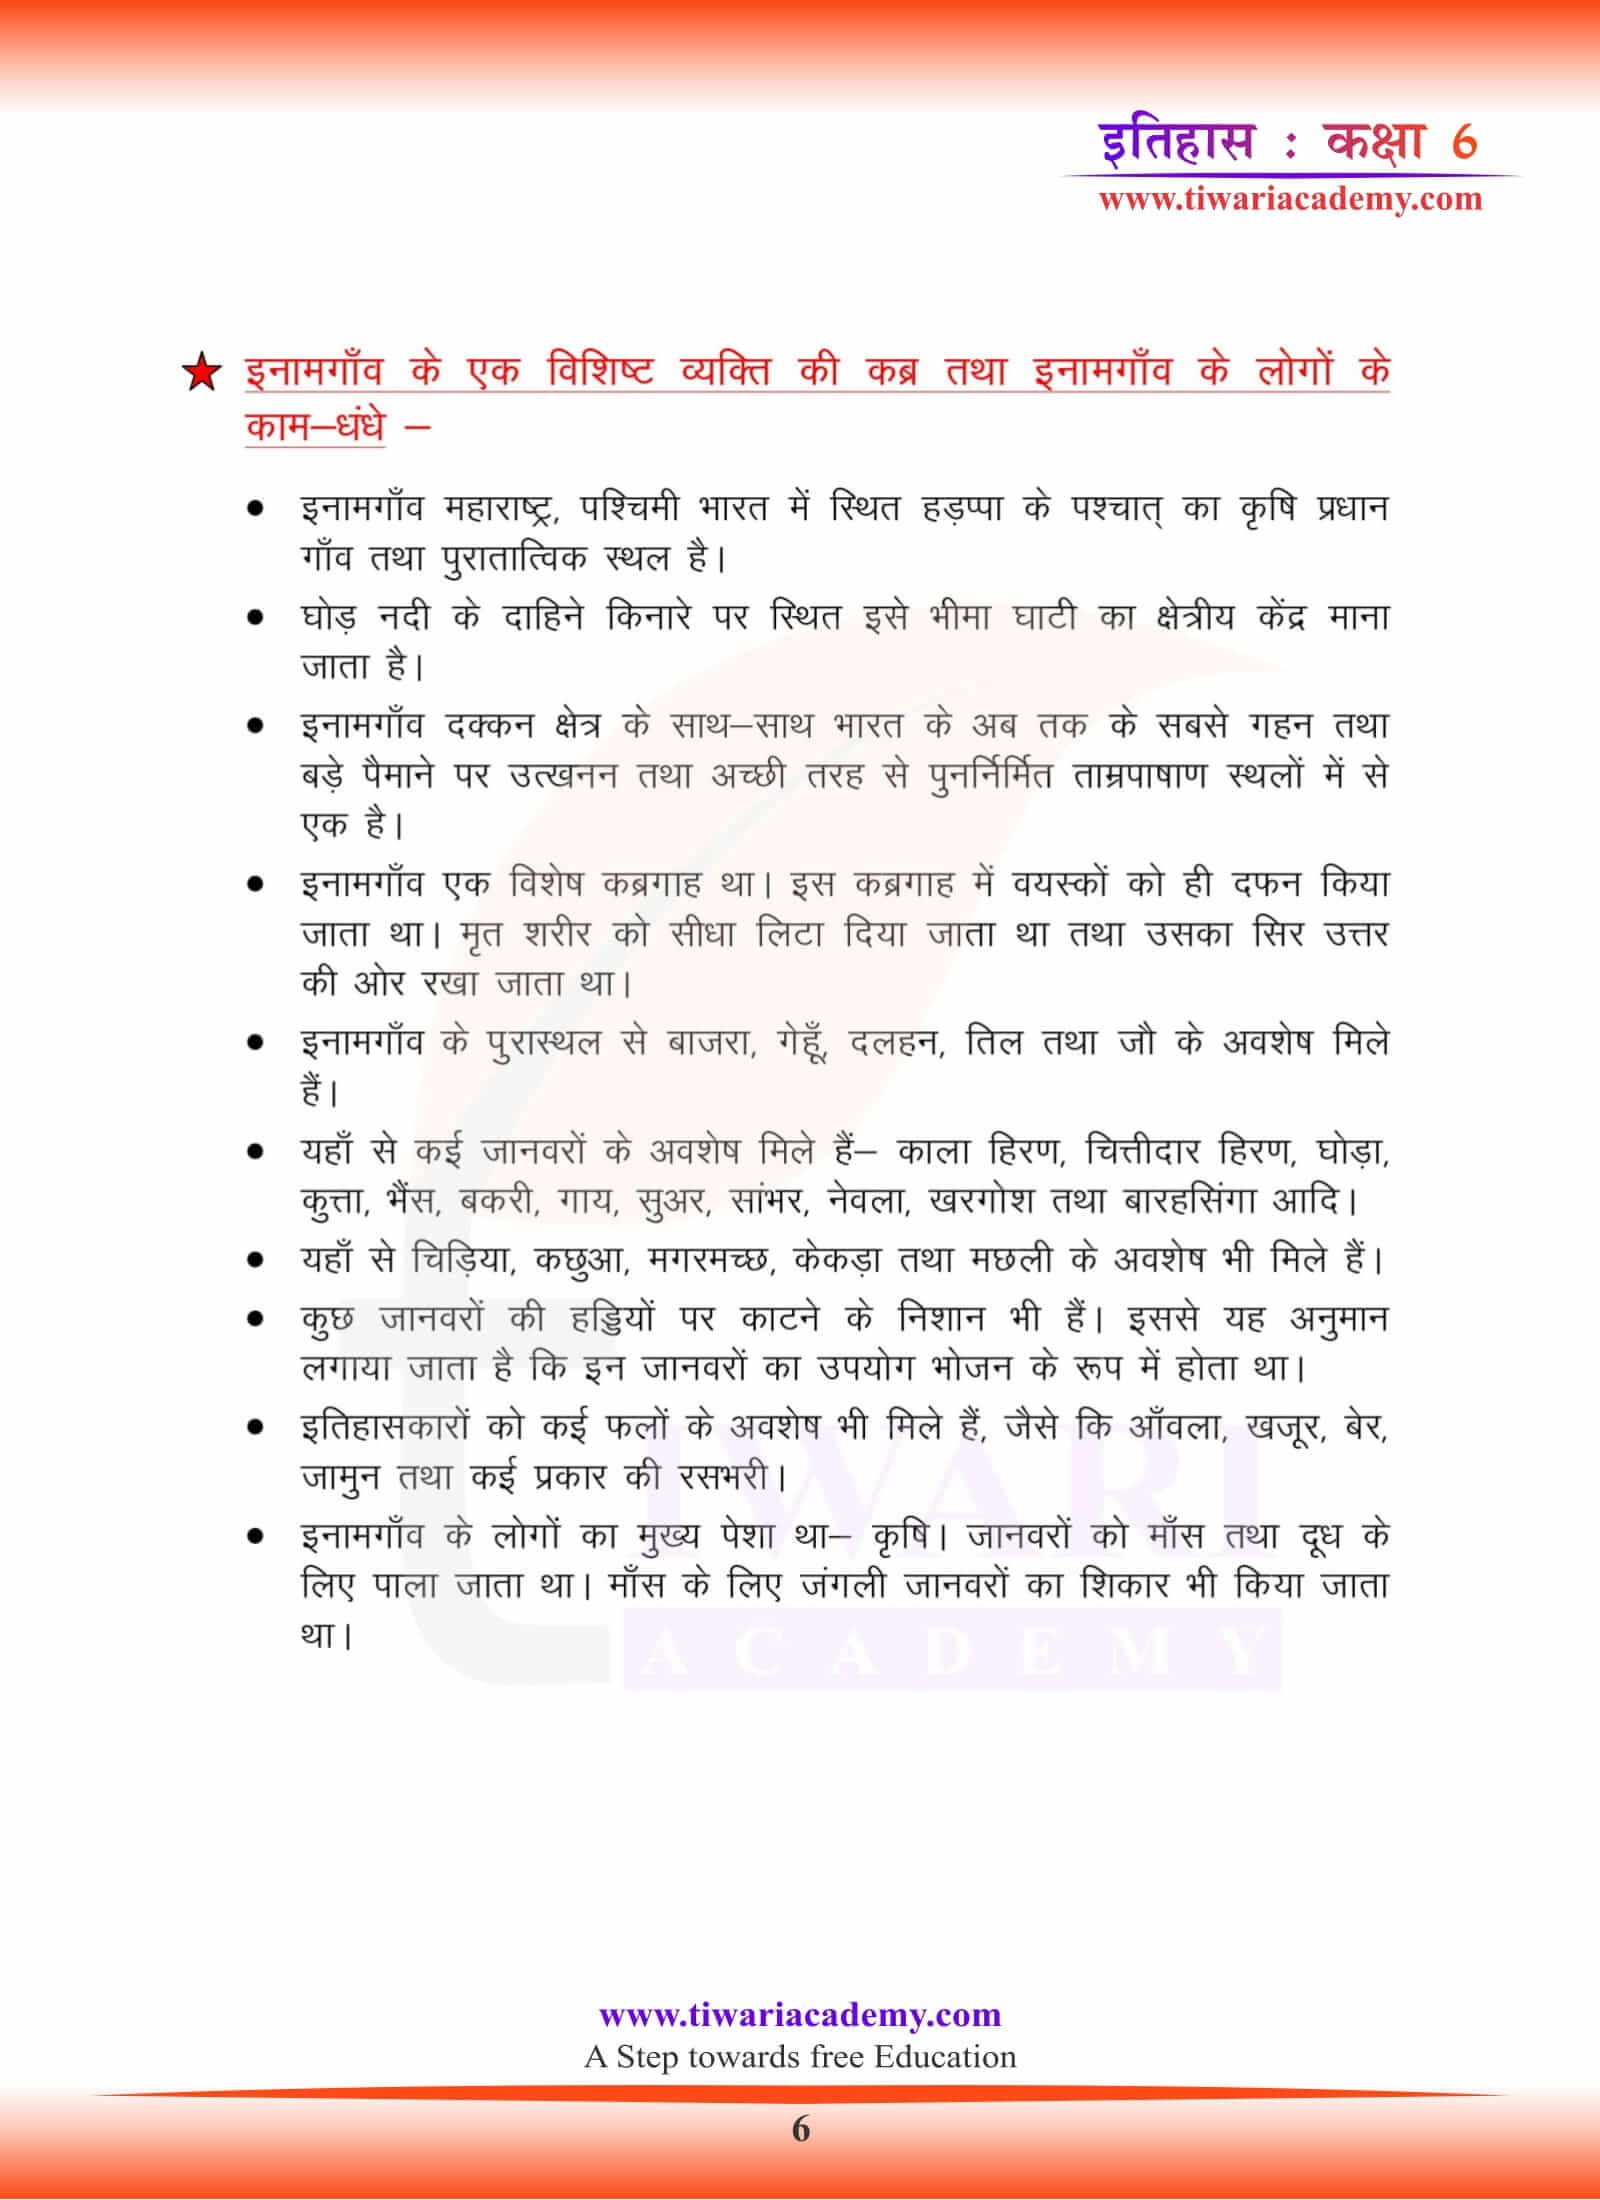 कक्षा 6 इतिहास अध्याय 4 हिंदी में नोट्स